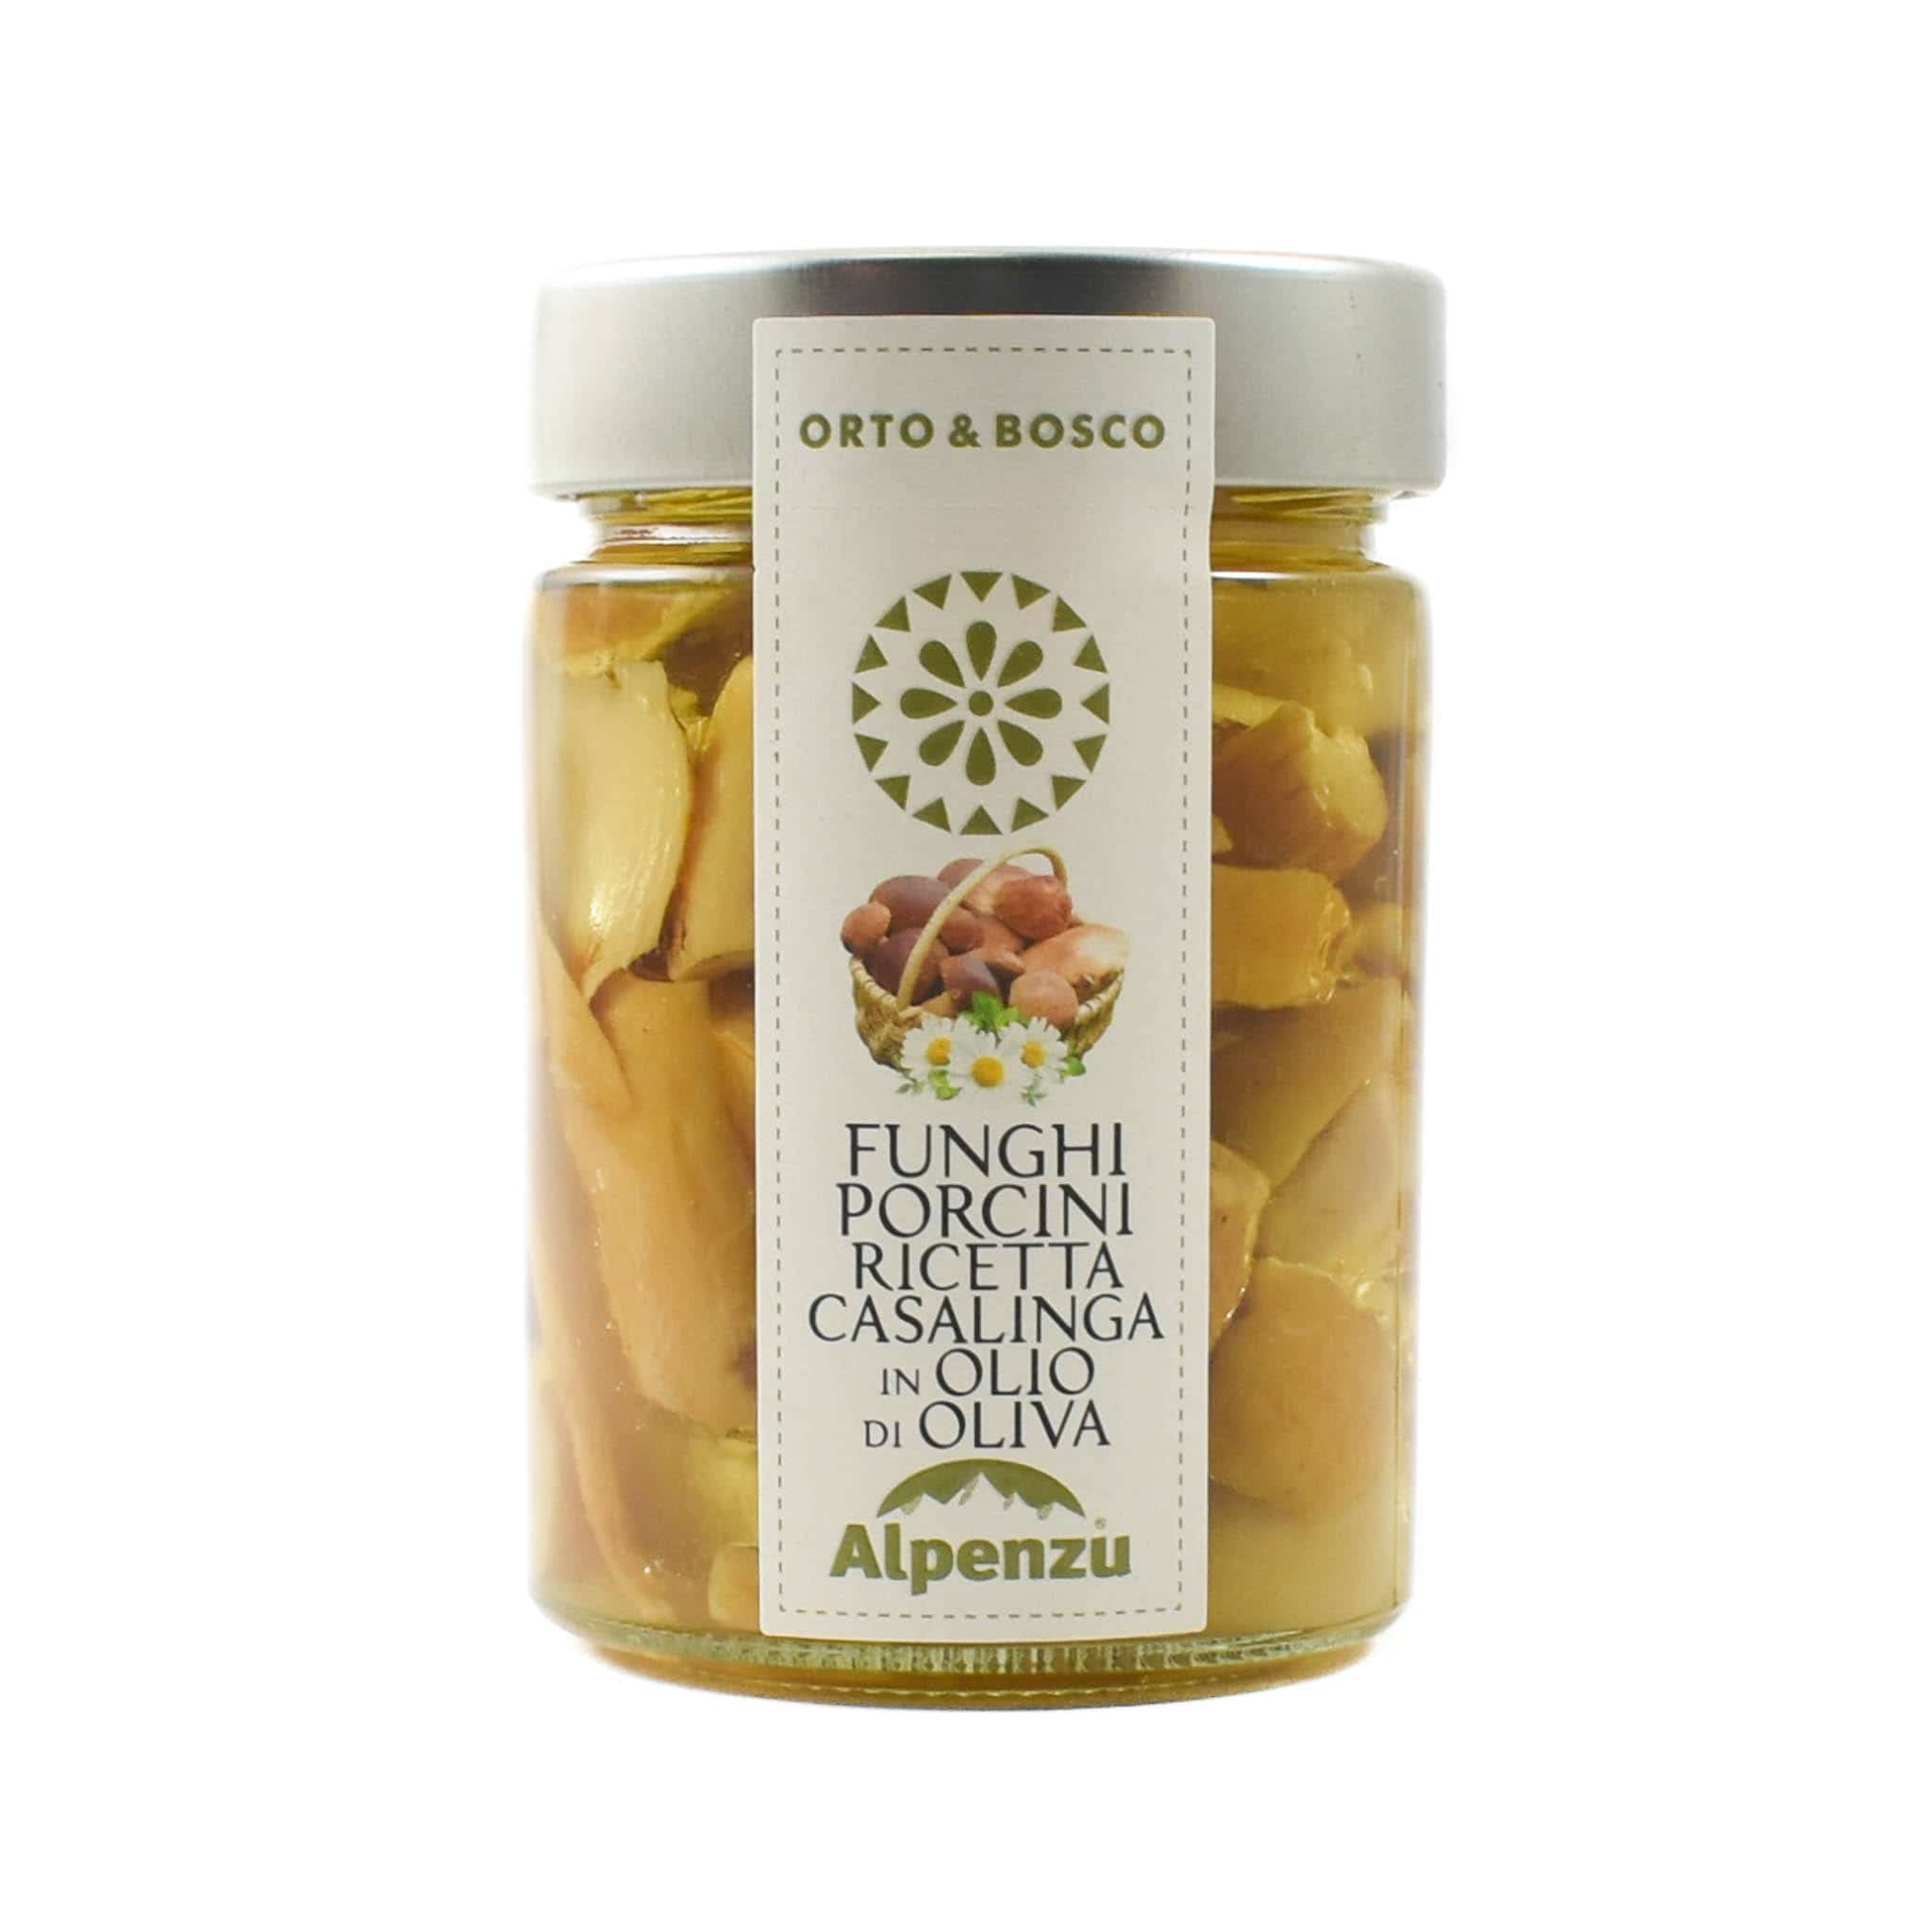 Alpenzu Porcini Mushrooms in Olive Oil, 310g